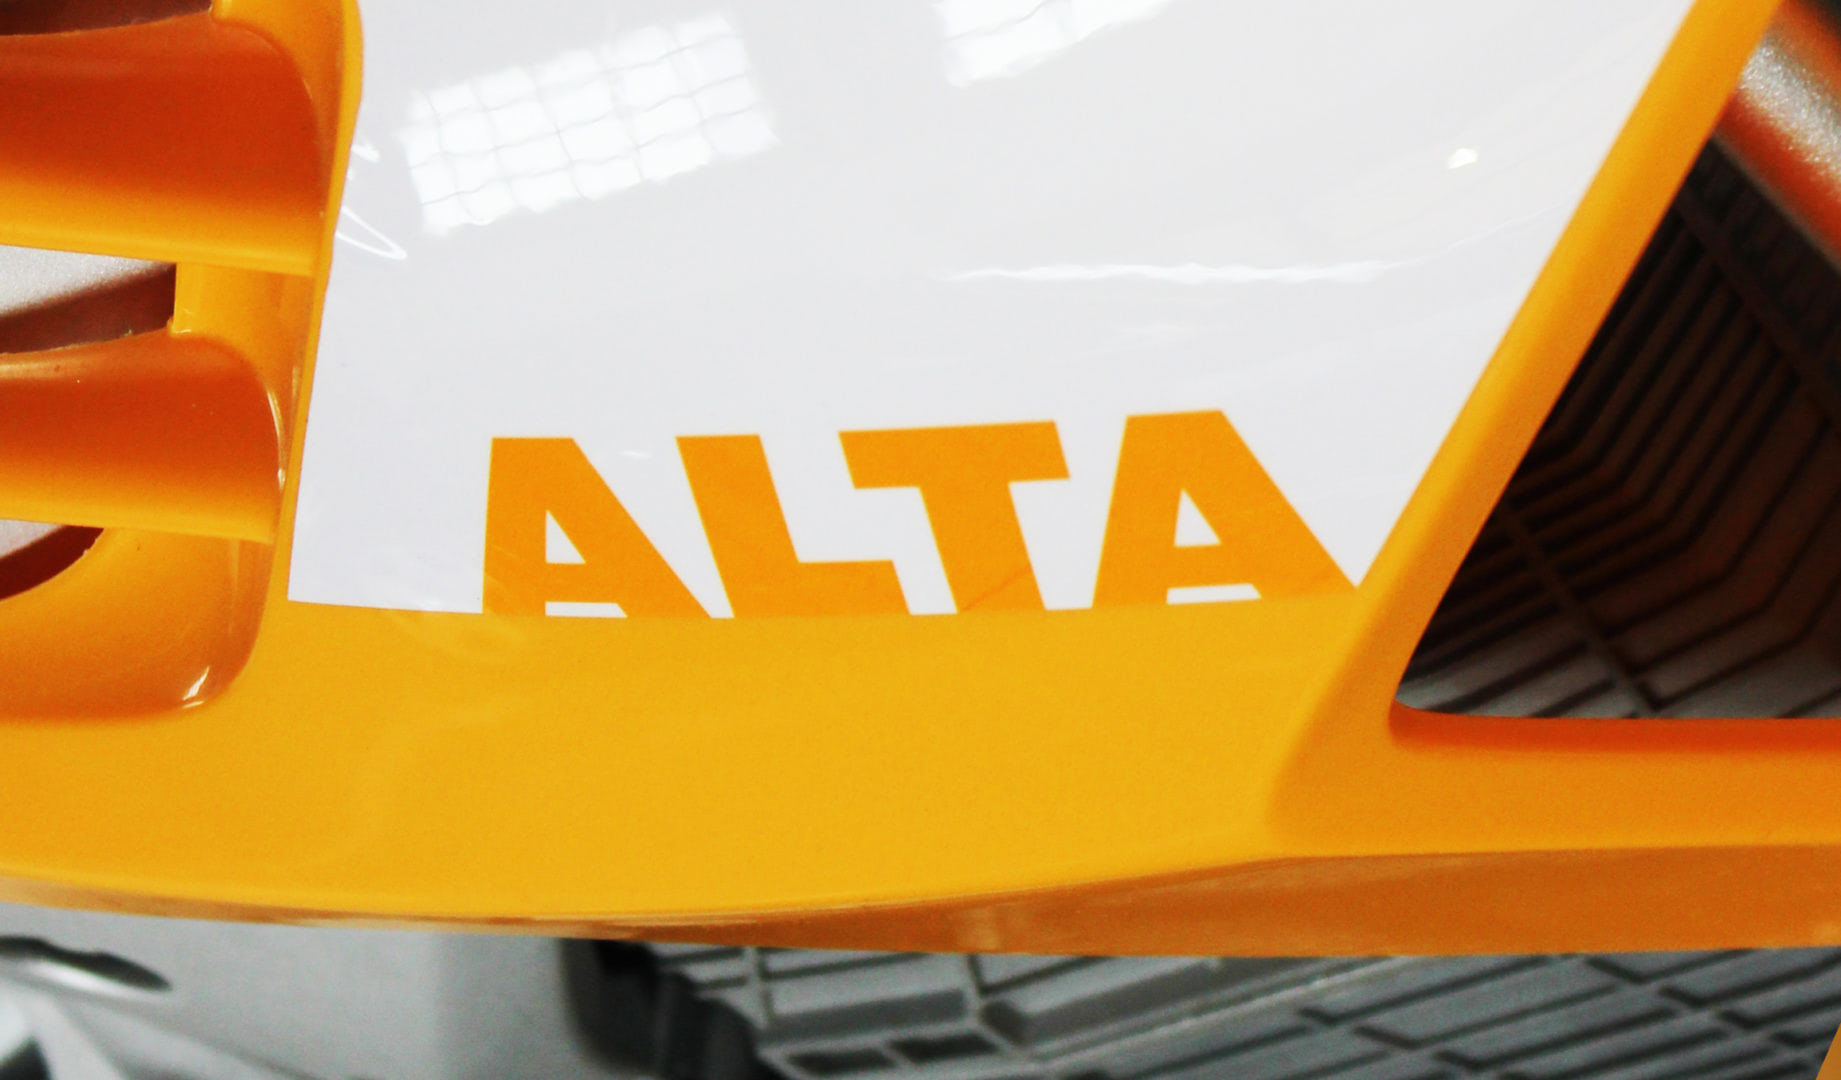 Alta Motors logo